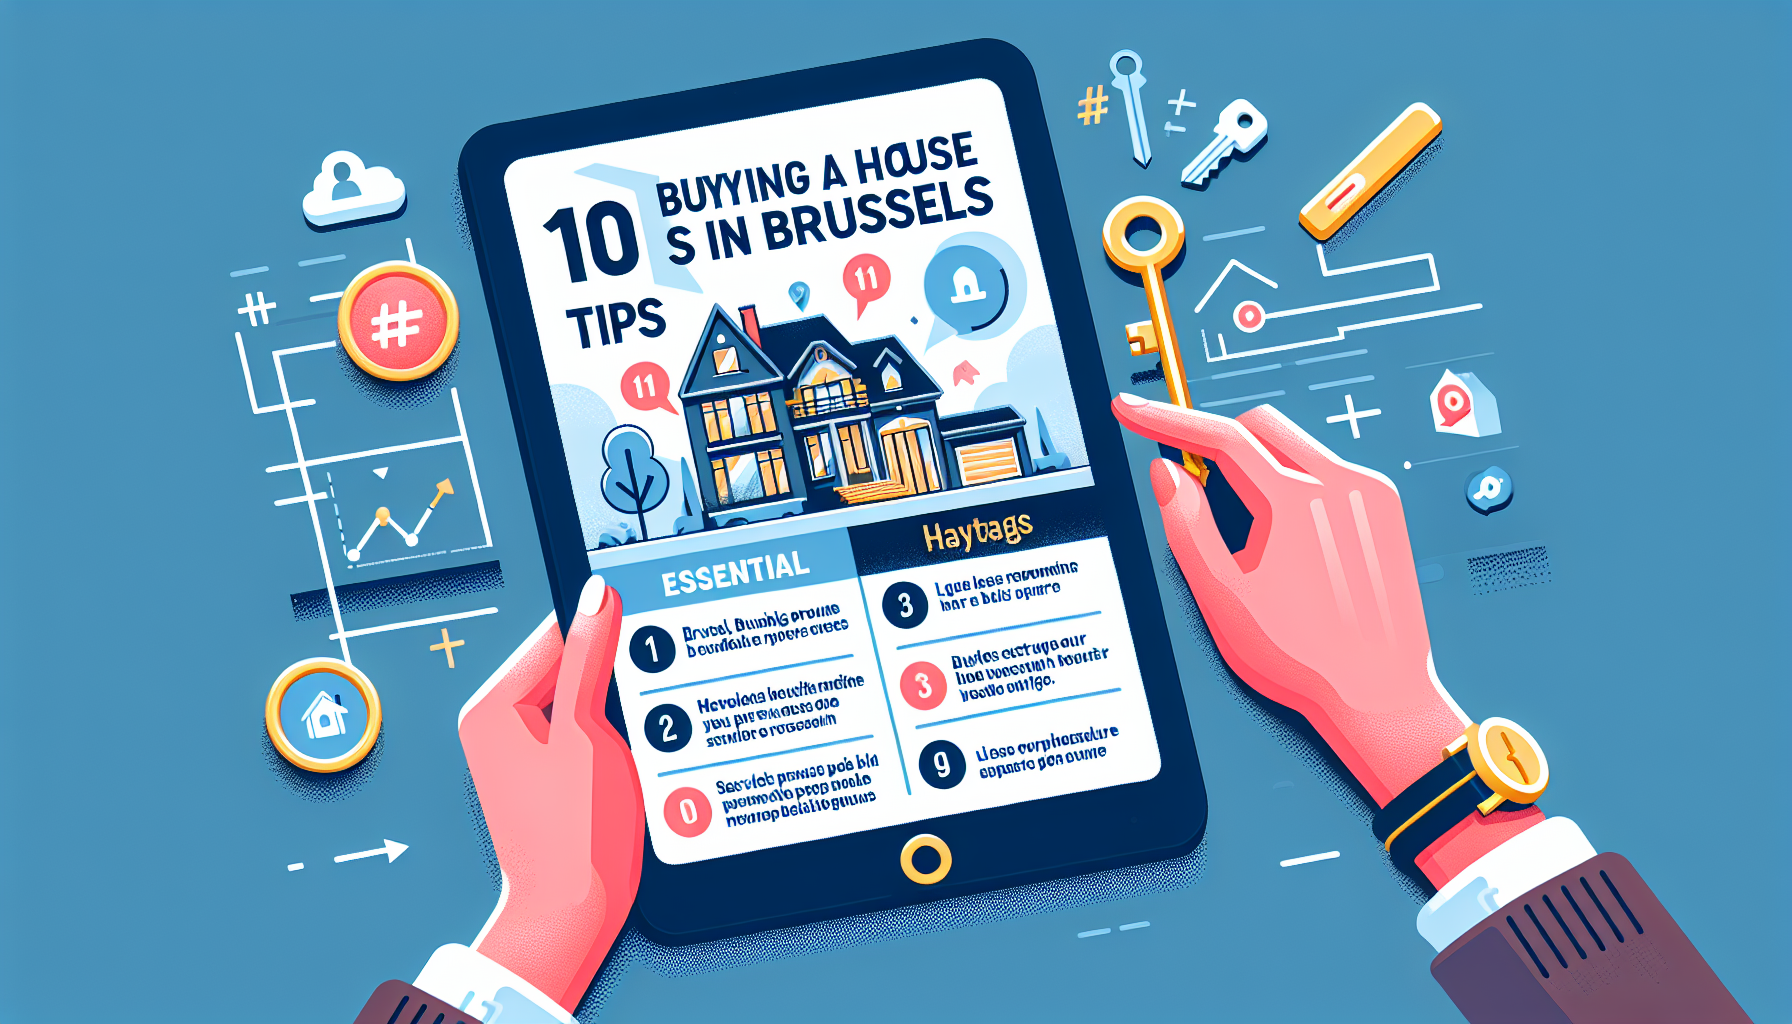 découvrez les points essentiels à considérer avant d'acheter une maison à bruxelles. conseils pratiques pour acheter une maison dans la capitale belge.